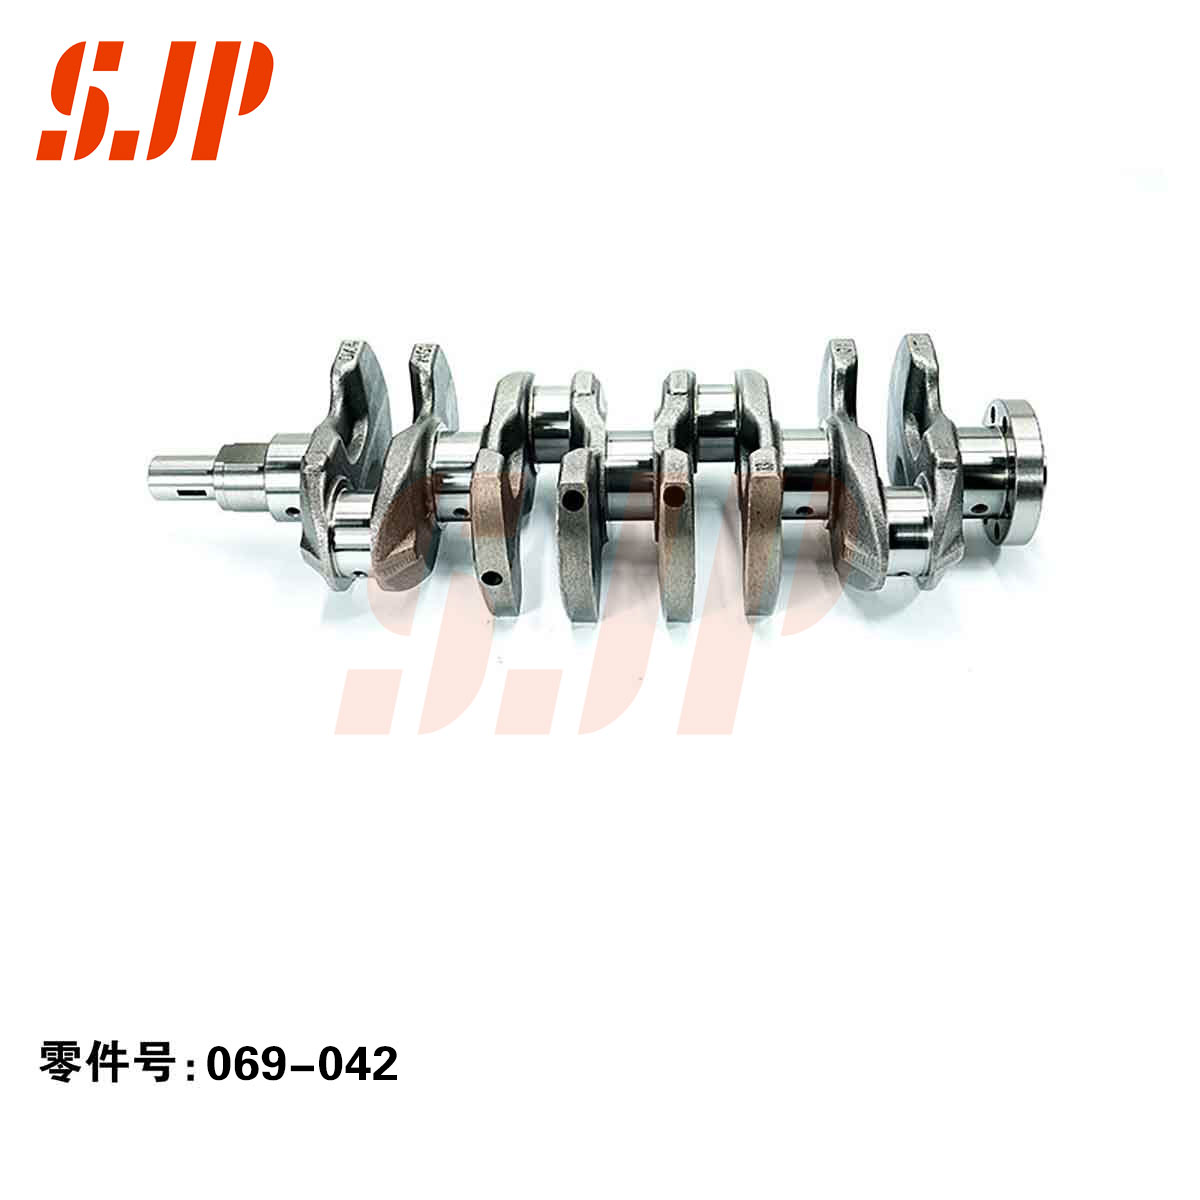 SJ-069-042 Crankshaft For Baojun 1.8/Liuji 479/Sokon 1.8/Geely 4G18/DVVT